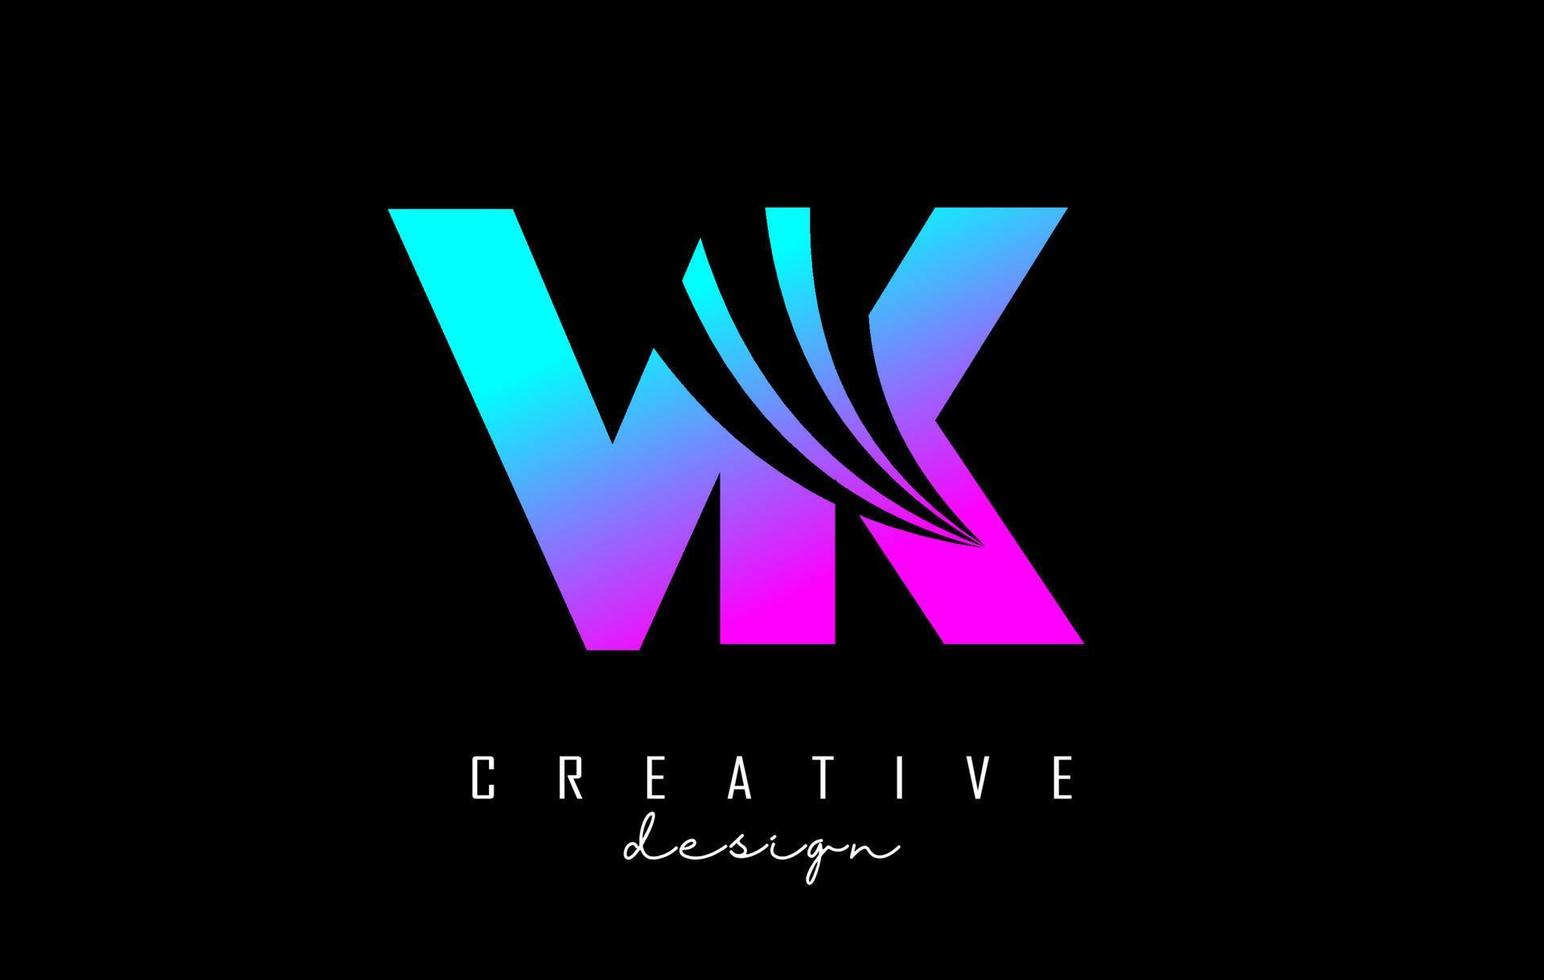 letras coloridas criativas vk vk logotipo com linhas principais e design de conceito de estrada. letras com desenho geométrico. vetor